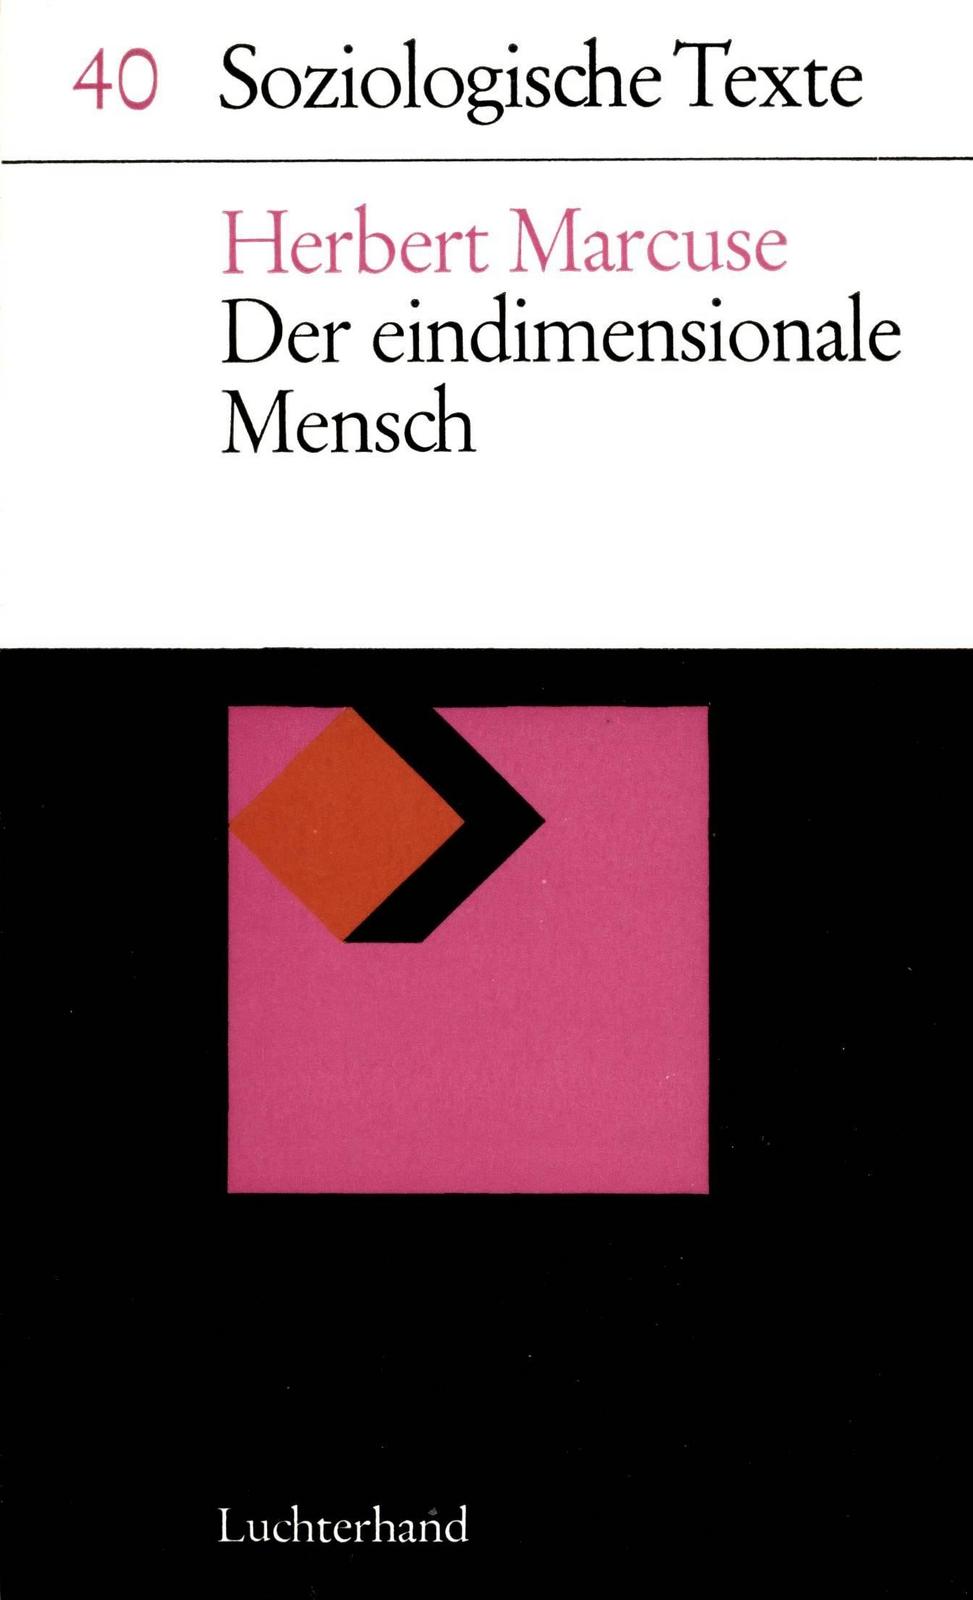 Der eindimensionale Mensch (German language, 1967, Luchterhand Fachverlag)